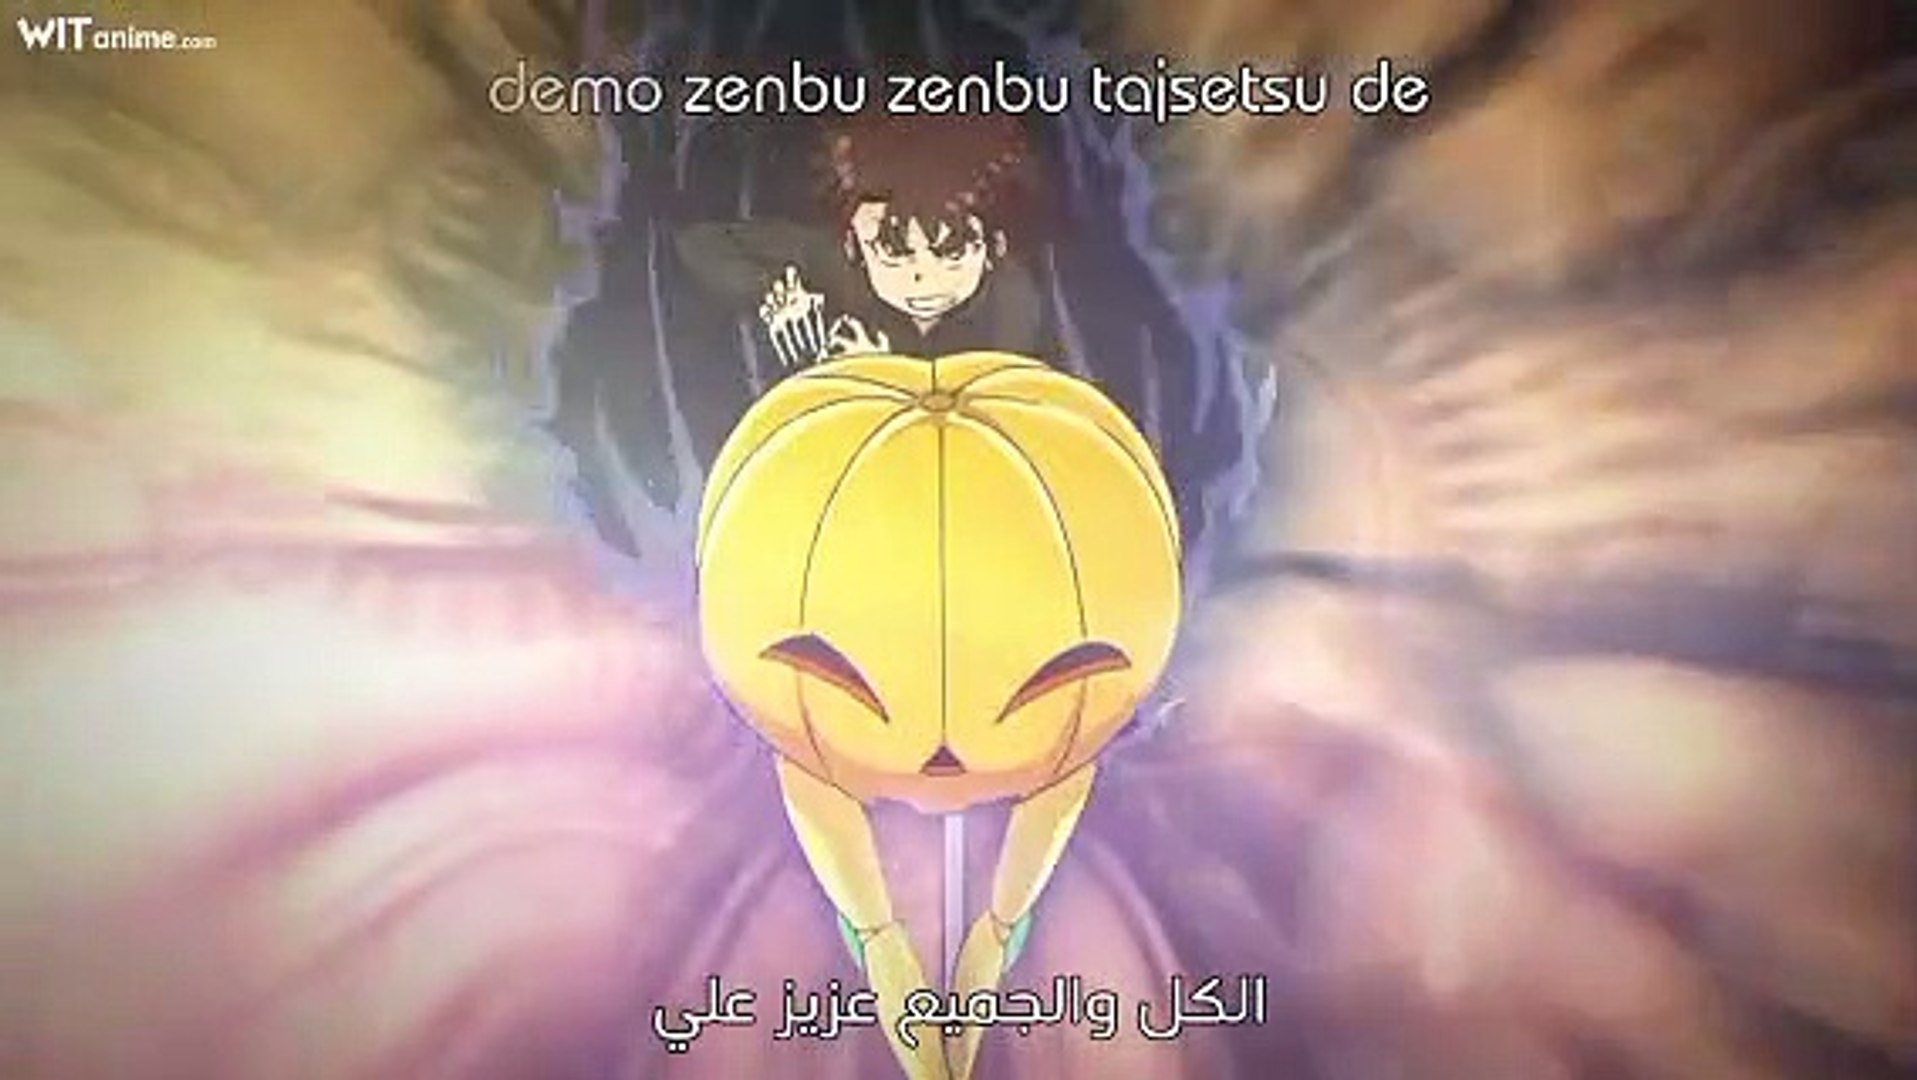 Karakuri Circus - Episódio 27 - Animes Online